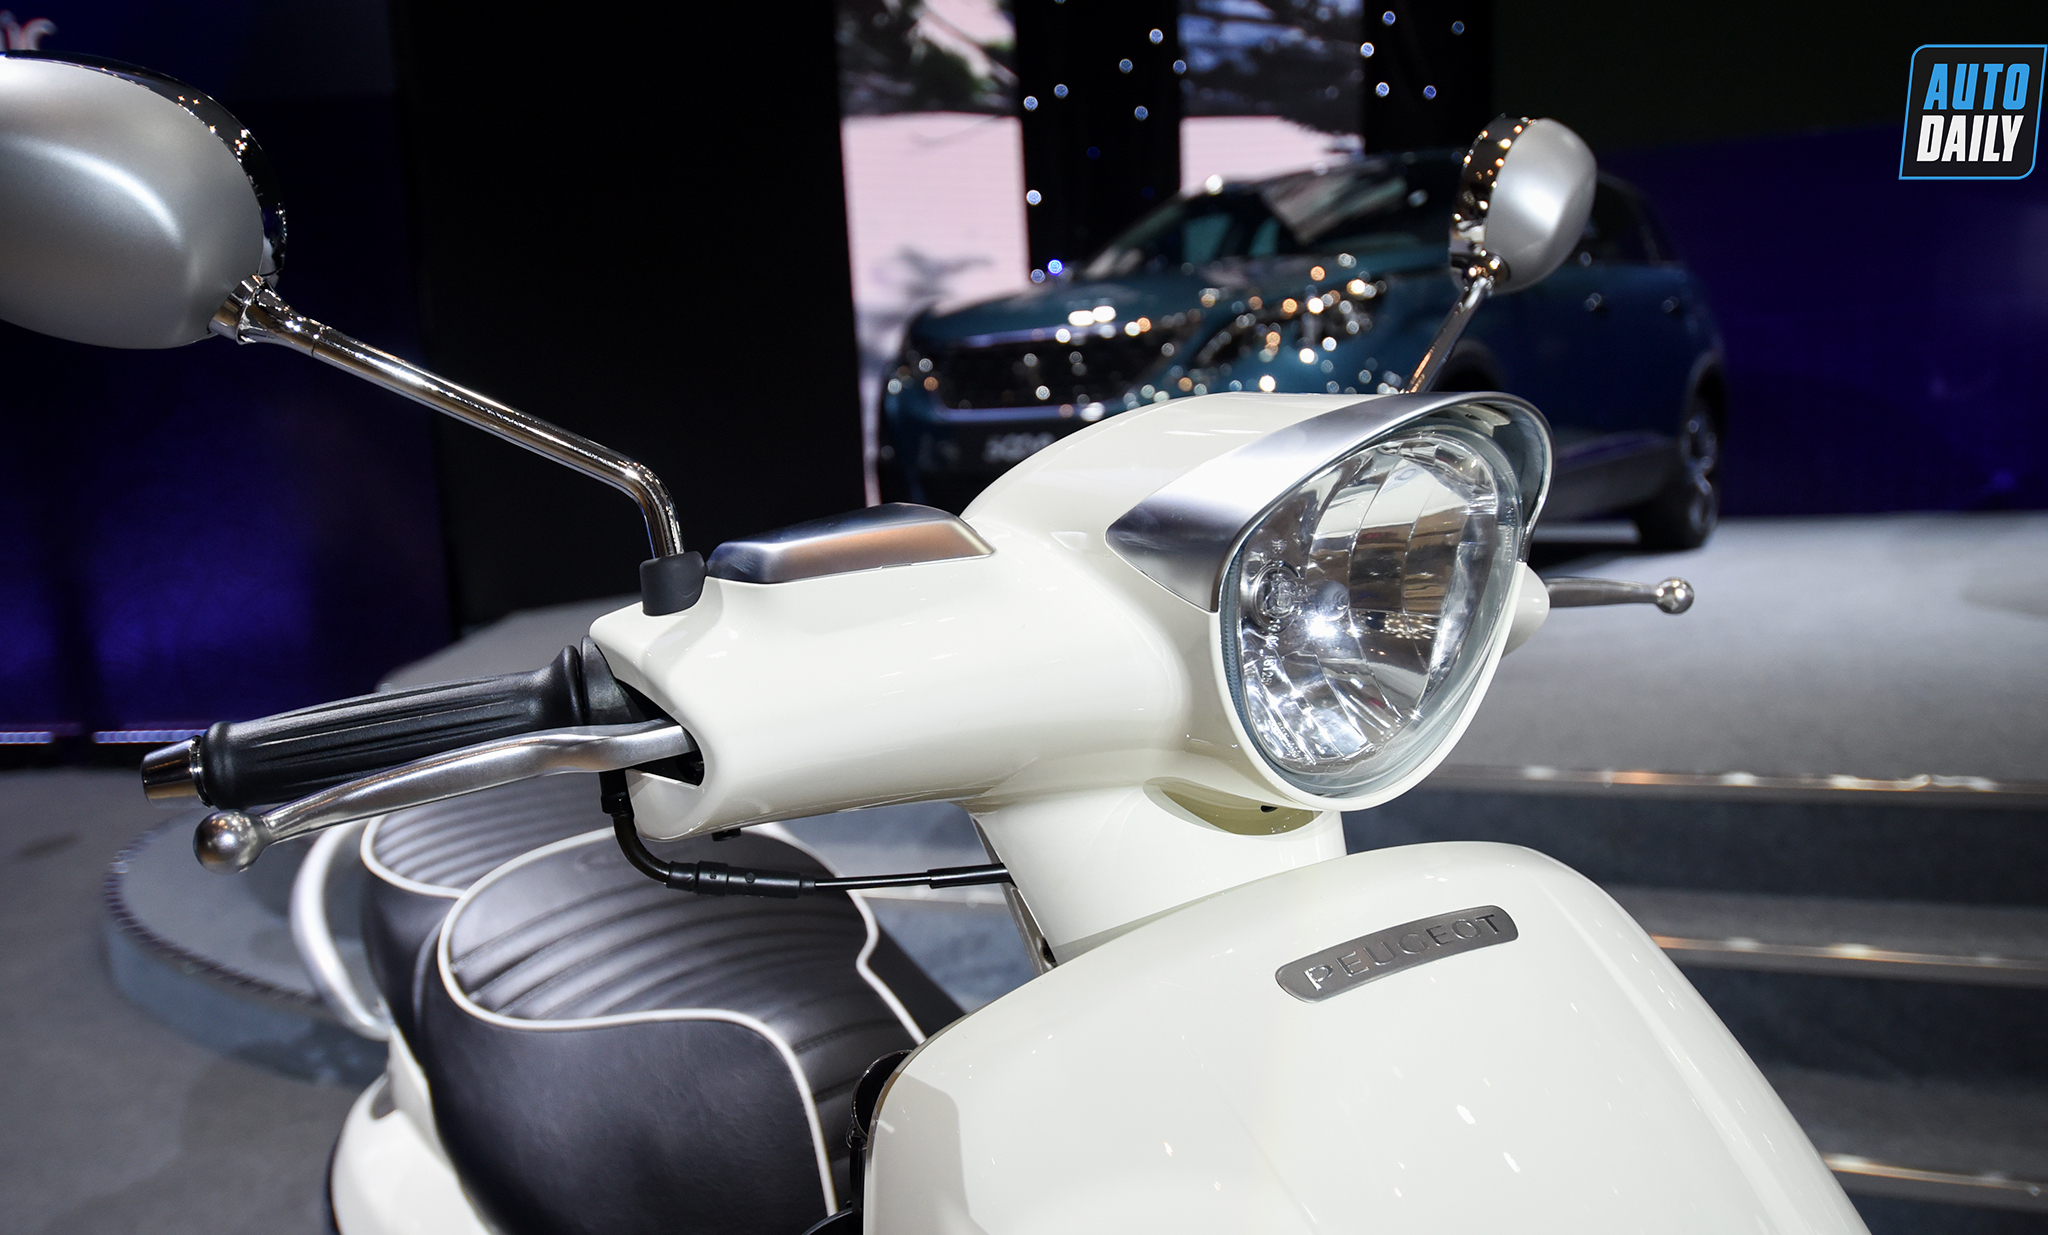 Thaco ra mắt xe máy Peugeot Django 125 giá 68 triệu đồng dsc-8656-copy.jpg